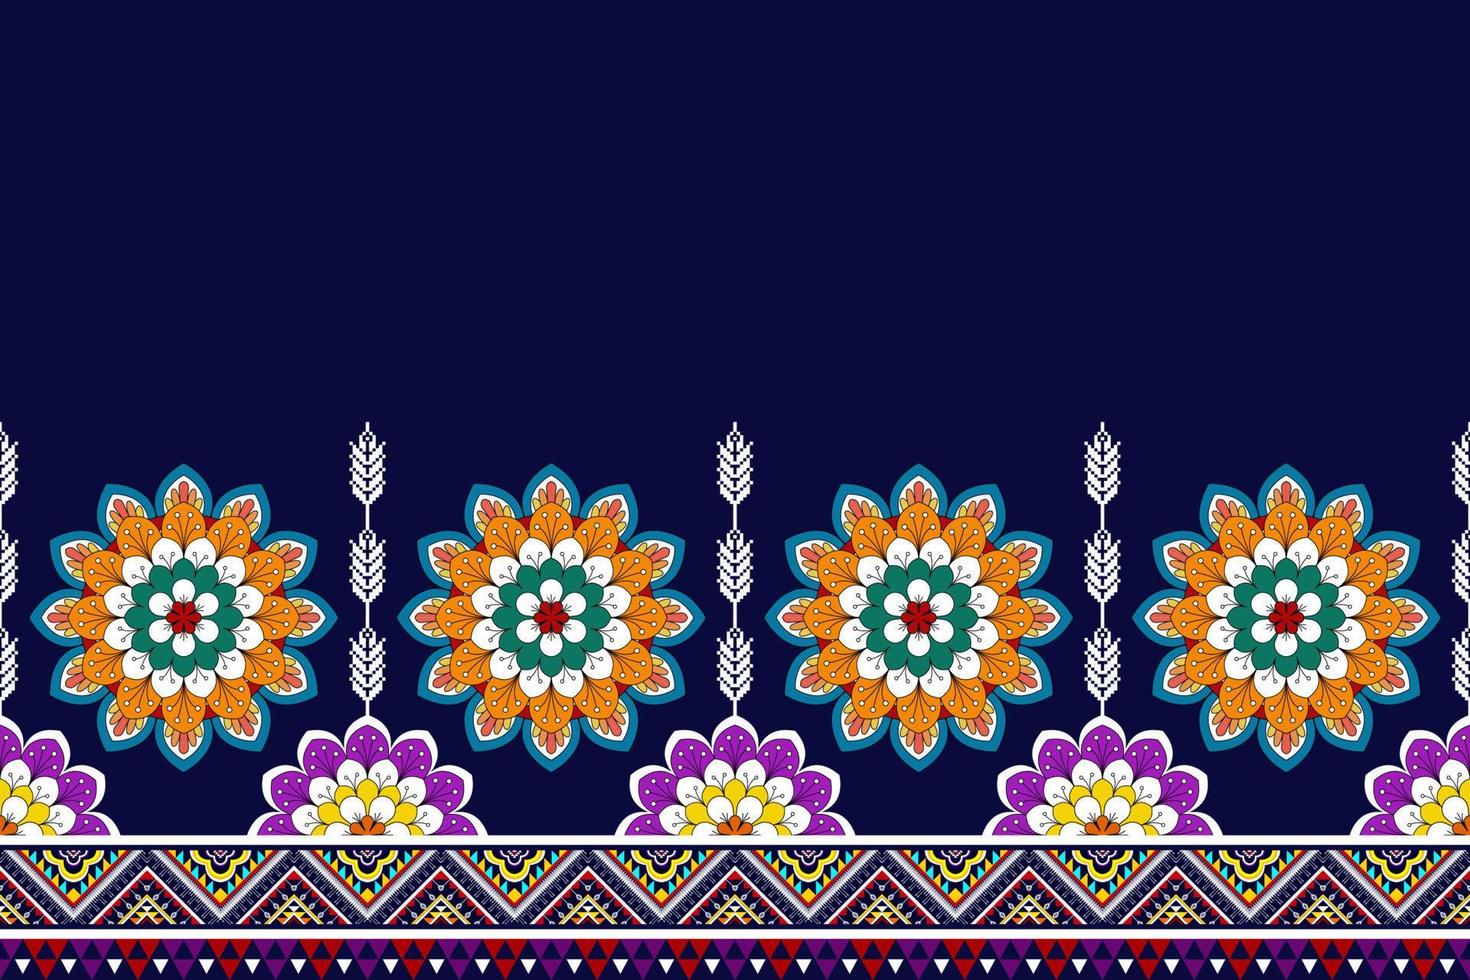 ikat abstracto geométrico mandala étnico diseño de patrones sin fisuras. alfombra de tela azteca adornos de mandala decoraciones textiles papel tapiz. tribal boho nativo mandalas turquía tradicional bordado vector